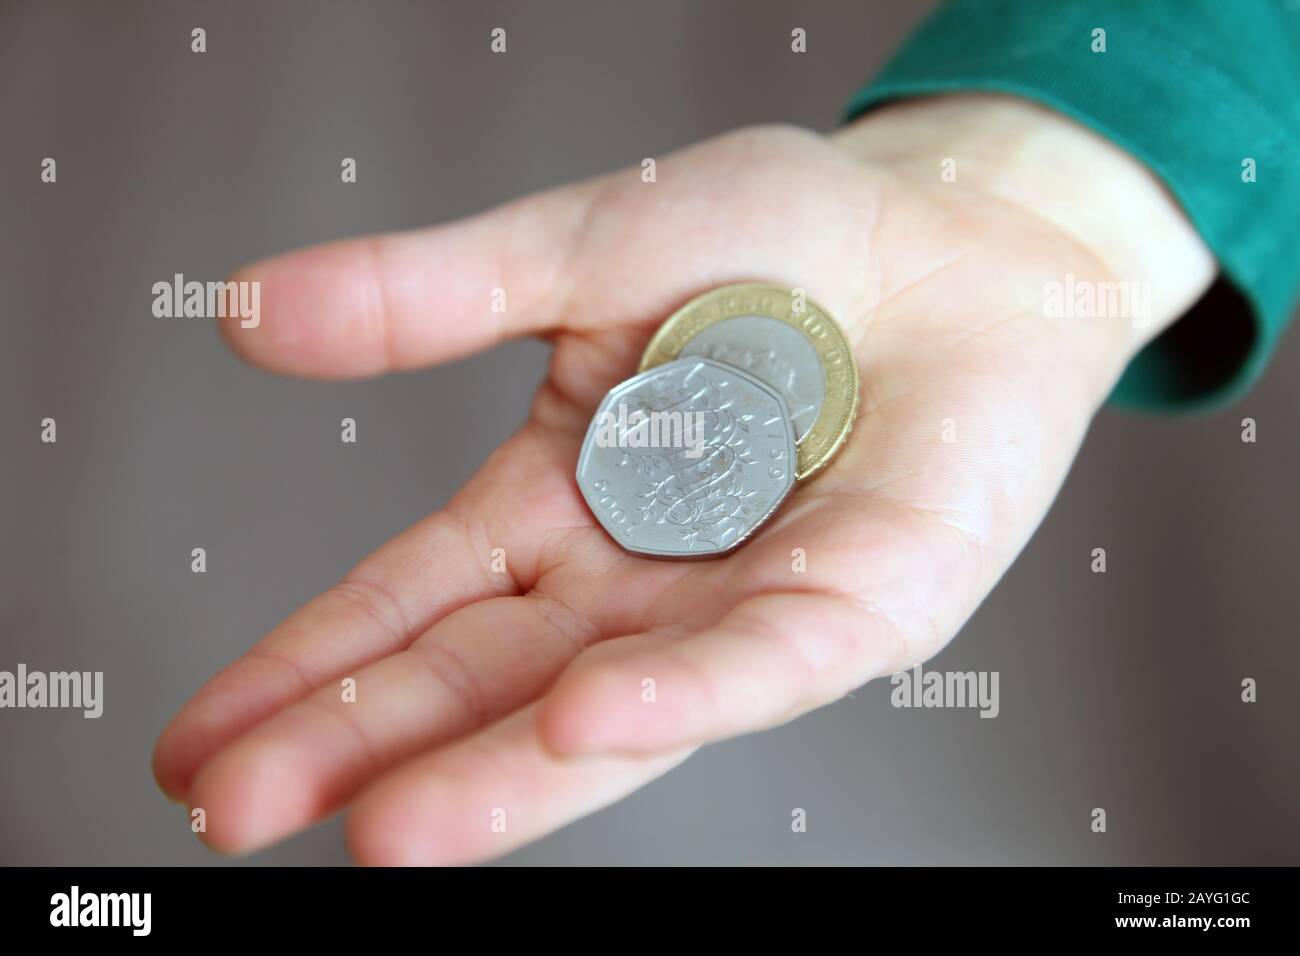 Un niño tiene £2.50 en su mano con un Kew Gardens 50p en cambio y una moneda de £2 Foto de stock